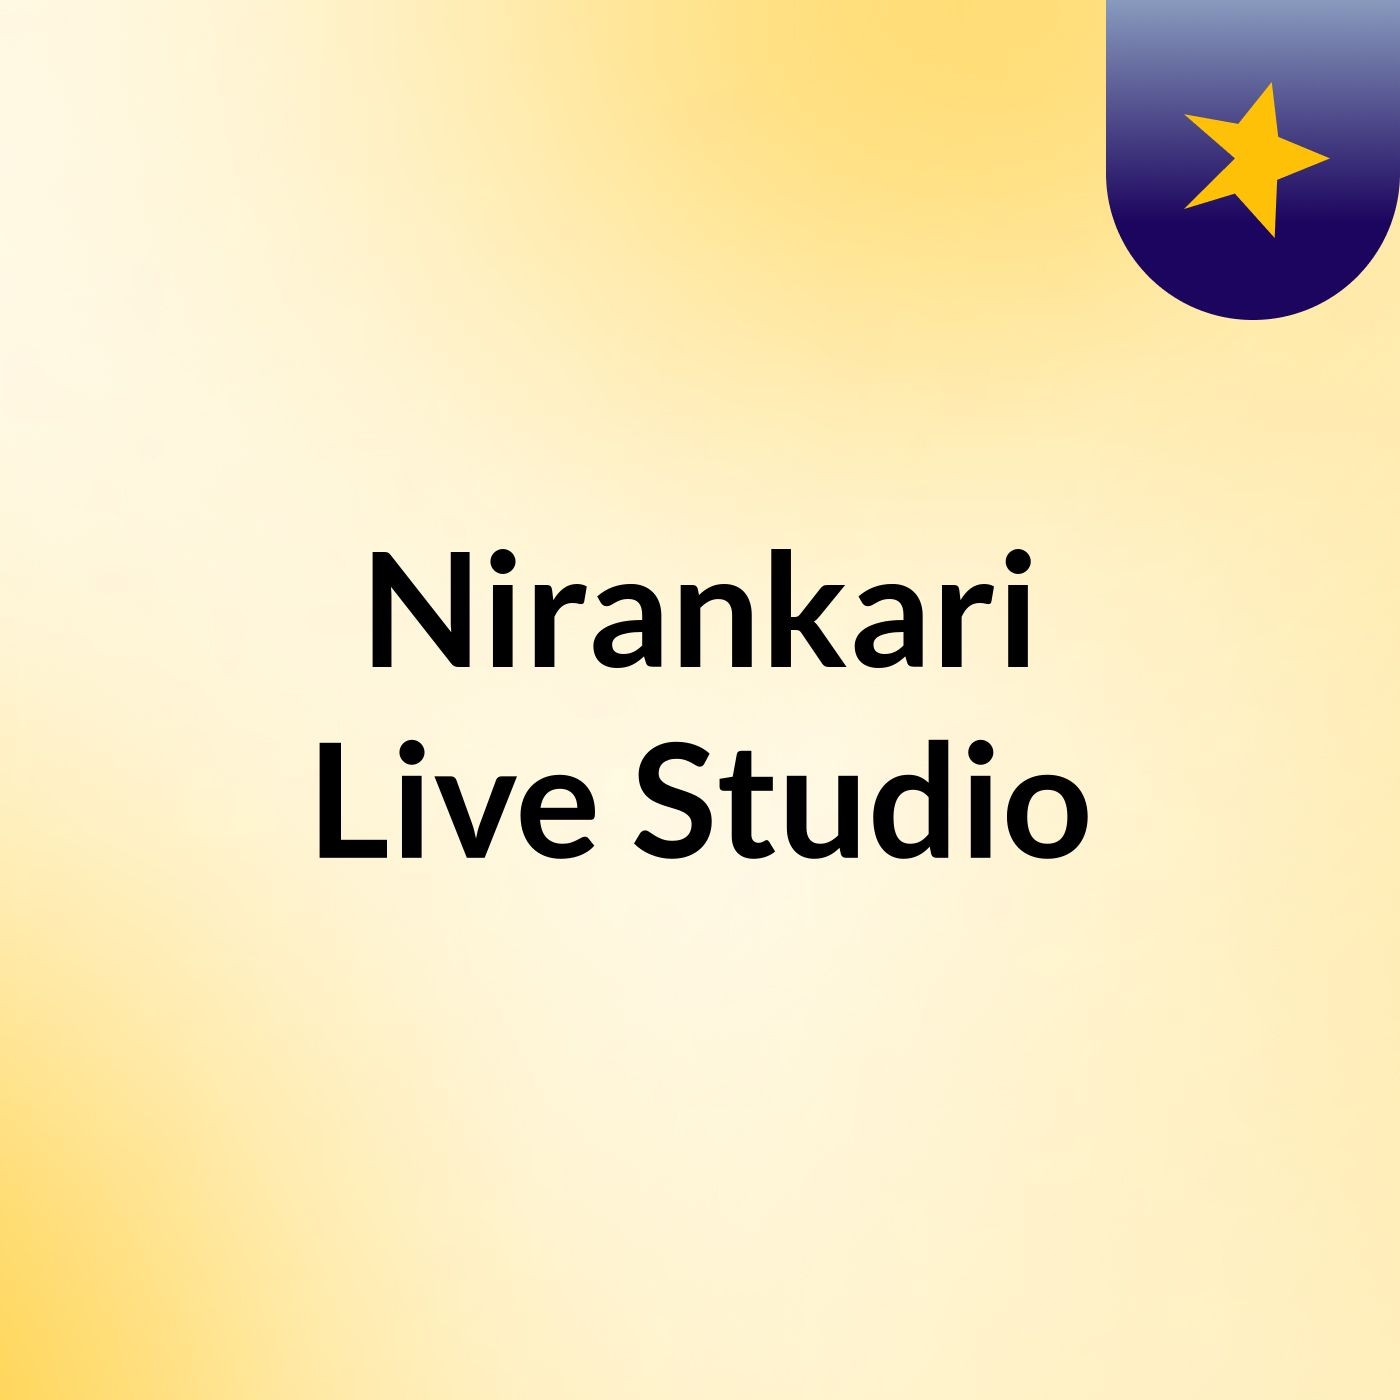 Episode 2 - Nirankari Live Studio